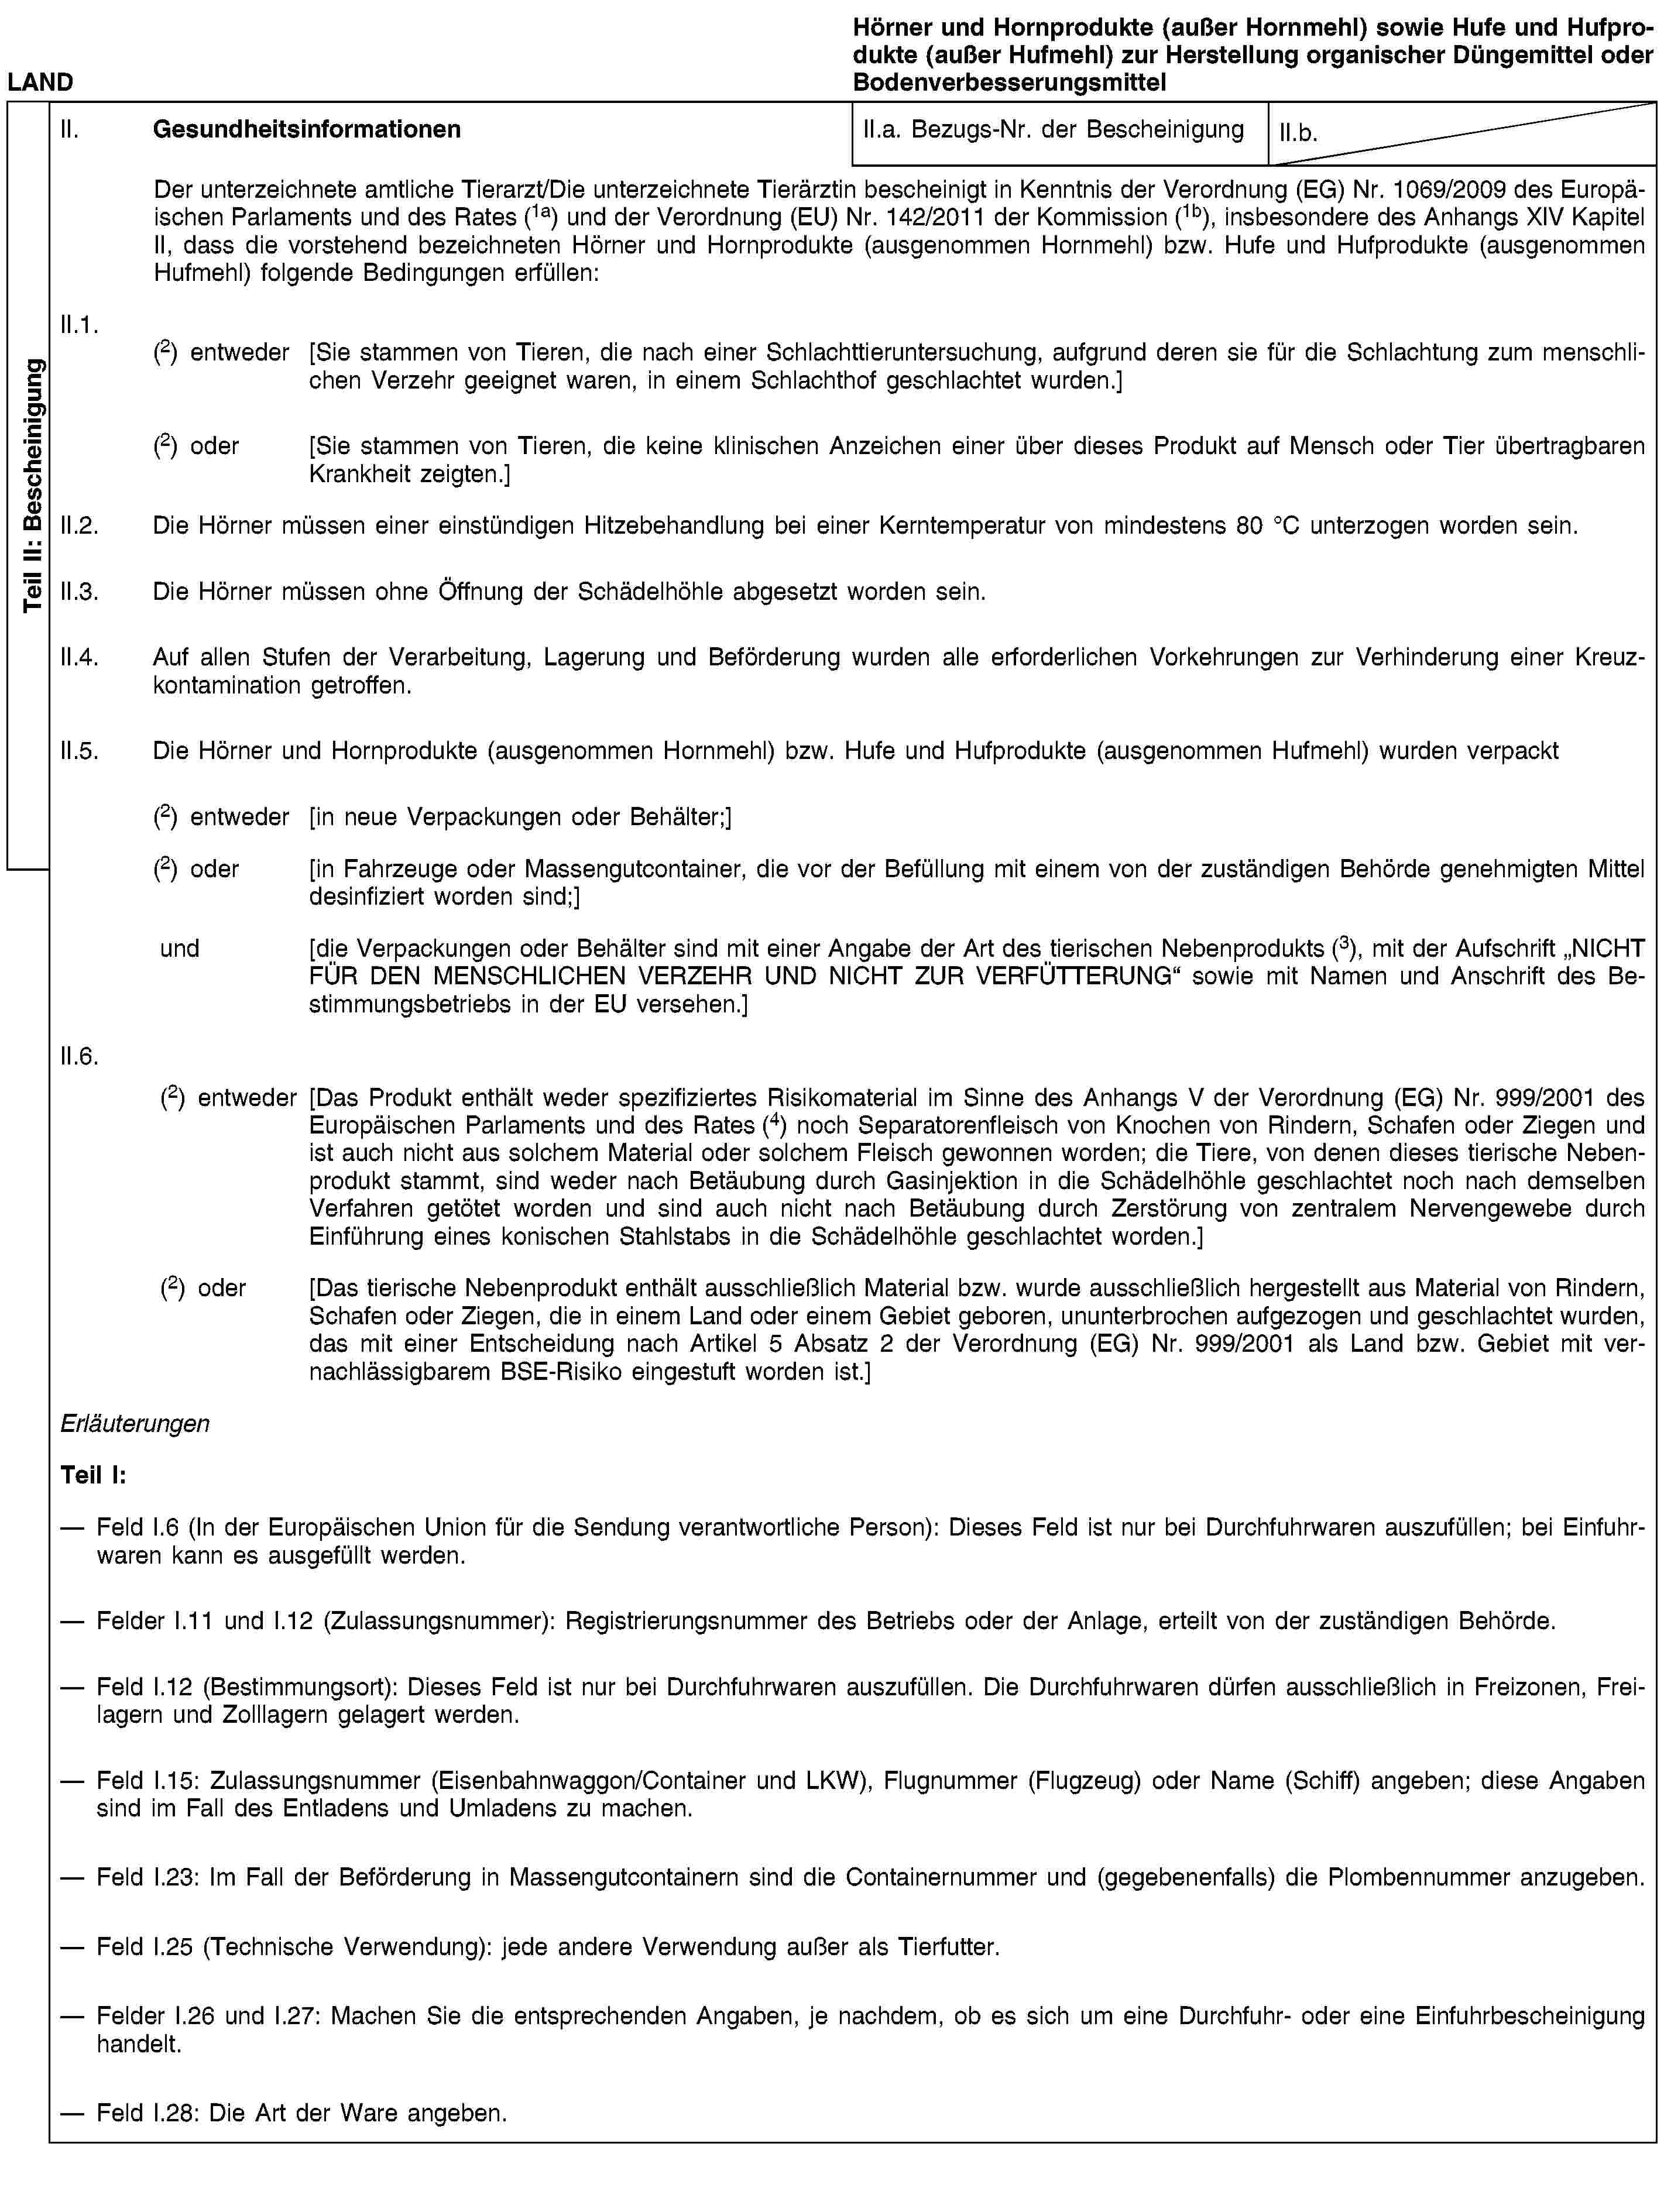 Teil II: BescheinigungLANDHörner und Hornprodukte (außer Hornmehl) sowie Hufe und Hufprodukte (außer Hufmehl) zur Herstellung organischer Düngemittel oder BodenverbesserungsmittelII. GesundheitsinformationenII.a. Bezugs-Nr. der BescheinigungII.b.Der unterzeichnete amtliche Tierarzt/Die unterzeichnete Tierärztin bescheinigt in Kenntnis der Verordnung (EG) Nr. 1069/2009 des Europäischen Parlaments und des Rates (1a) und der Verordnung (EU) Nr. 142/2011 der Kommission (1b), insbesondere des Anhangs XIV Kapitel II, dass die vorstehend bezeichneten Hörner und Hornprodukte (ausgenommen Hornmehl) bzw. Hufe und Hufprodukte (ausgenommen Hufmehl) folgende Bedingungen erfüllen:II.1. (2) entweder [Sie stammen von Tieren, die nach einer Schlachttieruntersuchung, aufgrund deren sie für die Schlachtung zum menschlichen Verzehr geeignet waren, in einem Schlachthof geschlachtet wurden.](2) oder [Sie stammen von Tieren, die keine klinischen Anzeichen einer über dieses Produkt auf Mensch oder Tier übertragbaren Krankheit zeigten.]II.2. Die Hörner müssen einer einstündigen Hitzebehandlung bei einer Kerntemperatur von mindestens 80 °C unterzogen worden sein.II.3. Die Hörner müssen ohne Öffnung der Schädelhöhle abgesetzt worden sein.II.4. Auf allen Stufen der Verarbeitung, Lagerung und Beförderung wurden alle erforderlichen Vorkehrungen zur Verhinderung einer Kreuzkontamination getroffen.II.5. Die Hörner und Hornprodukte (ausgenommen Hornmehl) bzw. Hufe und Hufprodukte (ausgenommen Hufmehl) wurden verpackt(2) entweder [in neue Verpackungen oder Behälter;](2) oder [in Fahrzeuge oder Massengutcontainer, die vor der Befüllung mit einem von der zuständigen Behörde genehmigten Mittel desinfiziert worden sind;]und [die Verpackungen oder Behälter sind mit einer Angabe der Art des tierischen Nebenprodukts (3), mit der Aufschrift „NICHT FÜR DEN MENSCHLICHEN VERZEHR UND NICHT ZUR VERFÜTTERUNG“ sowie mit Namen und Anschrift des Bestimmungsbetriebs in der EU versehen.]II.6.(2) entweder [Das Produkt enthält weder spezifiziertes Risikomaterial im Sinne des Anhangs V der Verordnung (EG) Nr. 999/2001 des Europäischen Parlaments und des Rates (4) noch Separatorenfleisch von Knochen von Rindern, Schafen oder Ziegen und ist auch nicht aus solchem Material oder solchem Fleisch gewonnen worden; die Tiere, von denen dieses tierische Nebenprodukt stammt, sind weder nach Betäubung durch Gasinjektion in die Schädelhöhle geschlachtet noch nach demselben Verfahren getötet worden und sind auch nicht nach Betäubung durch Zerstörung von zentralem Nervengewebe durch Einführung eines konischen Stahlstabs in die Schädelhöhle geschlachtet worden.](2) oder [Das tierische Nebenprodukt enthält ausschließlich Material bzw. wurde ausschließlich hergestellt aus Material von Rindern, Schafen oder Ziegen, die in einem Land oder einem Gebiet geboren, ununterbrochen aufgezogen und geschlachtet wurden, das mit einer Entscheidung nach Artikel 5 Absatz 2 der Verordnung (EG) Nr. 999/2001 als Land bzw. Gebiet mit vernachlässigbarem BSE-Risiko eingestuft worden ist.]ErläuterungenTeil I:Feld I.6 (In der Europäischen Union für die Sendung verantwortliche Person): Dieses Feld ist nur bei Durchfuhrwaren auszufüllen; bei Einfuhrwaren kann es ausgefüllt werden.Felder I.11 und I.12 (Zulassungsnummer): Registrierungsnummer des Betriebs oder der Anlage, erteilt von der zuständigen Behörde.Feld I.12 (Bestimmungsort): Dieses Feld ist nur bei Durchfuhrwaren auszufüllen. Die Durchfuhrwaren dürfen ausschließlich in Freizonen, Freilagern und Zolllagern gelagert werden.Feld I.15: Zulassungsnummer (Eisenbahnwaggon/Container und LKW), Flugnummer (Flugzeug) oder Name (Schiff) angeben; diese Angaben sind im Fall des Entladens und Umladens zu machen.Feld I.23: Im Fall der Beförderung in Massengutcontainern sind die Containernummer und (gegebenenfalls) die Plombennummer anzugeben.Feld I.25 (Technische Verwendung): jede andere Verwendung außer als Tierfutter.Felder I.26 und I.27: Machen Sie die entsprechenden Angaben, je nachdem, ob es sich um eine Durchfuhr- oder eine Einfuhrbescheinigung handelt.Feld I.28: Die Art der Ware angeben.